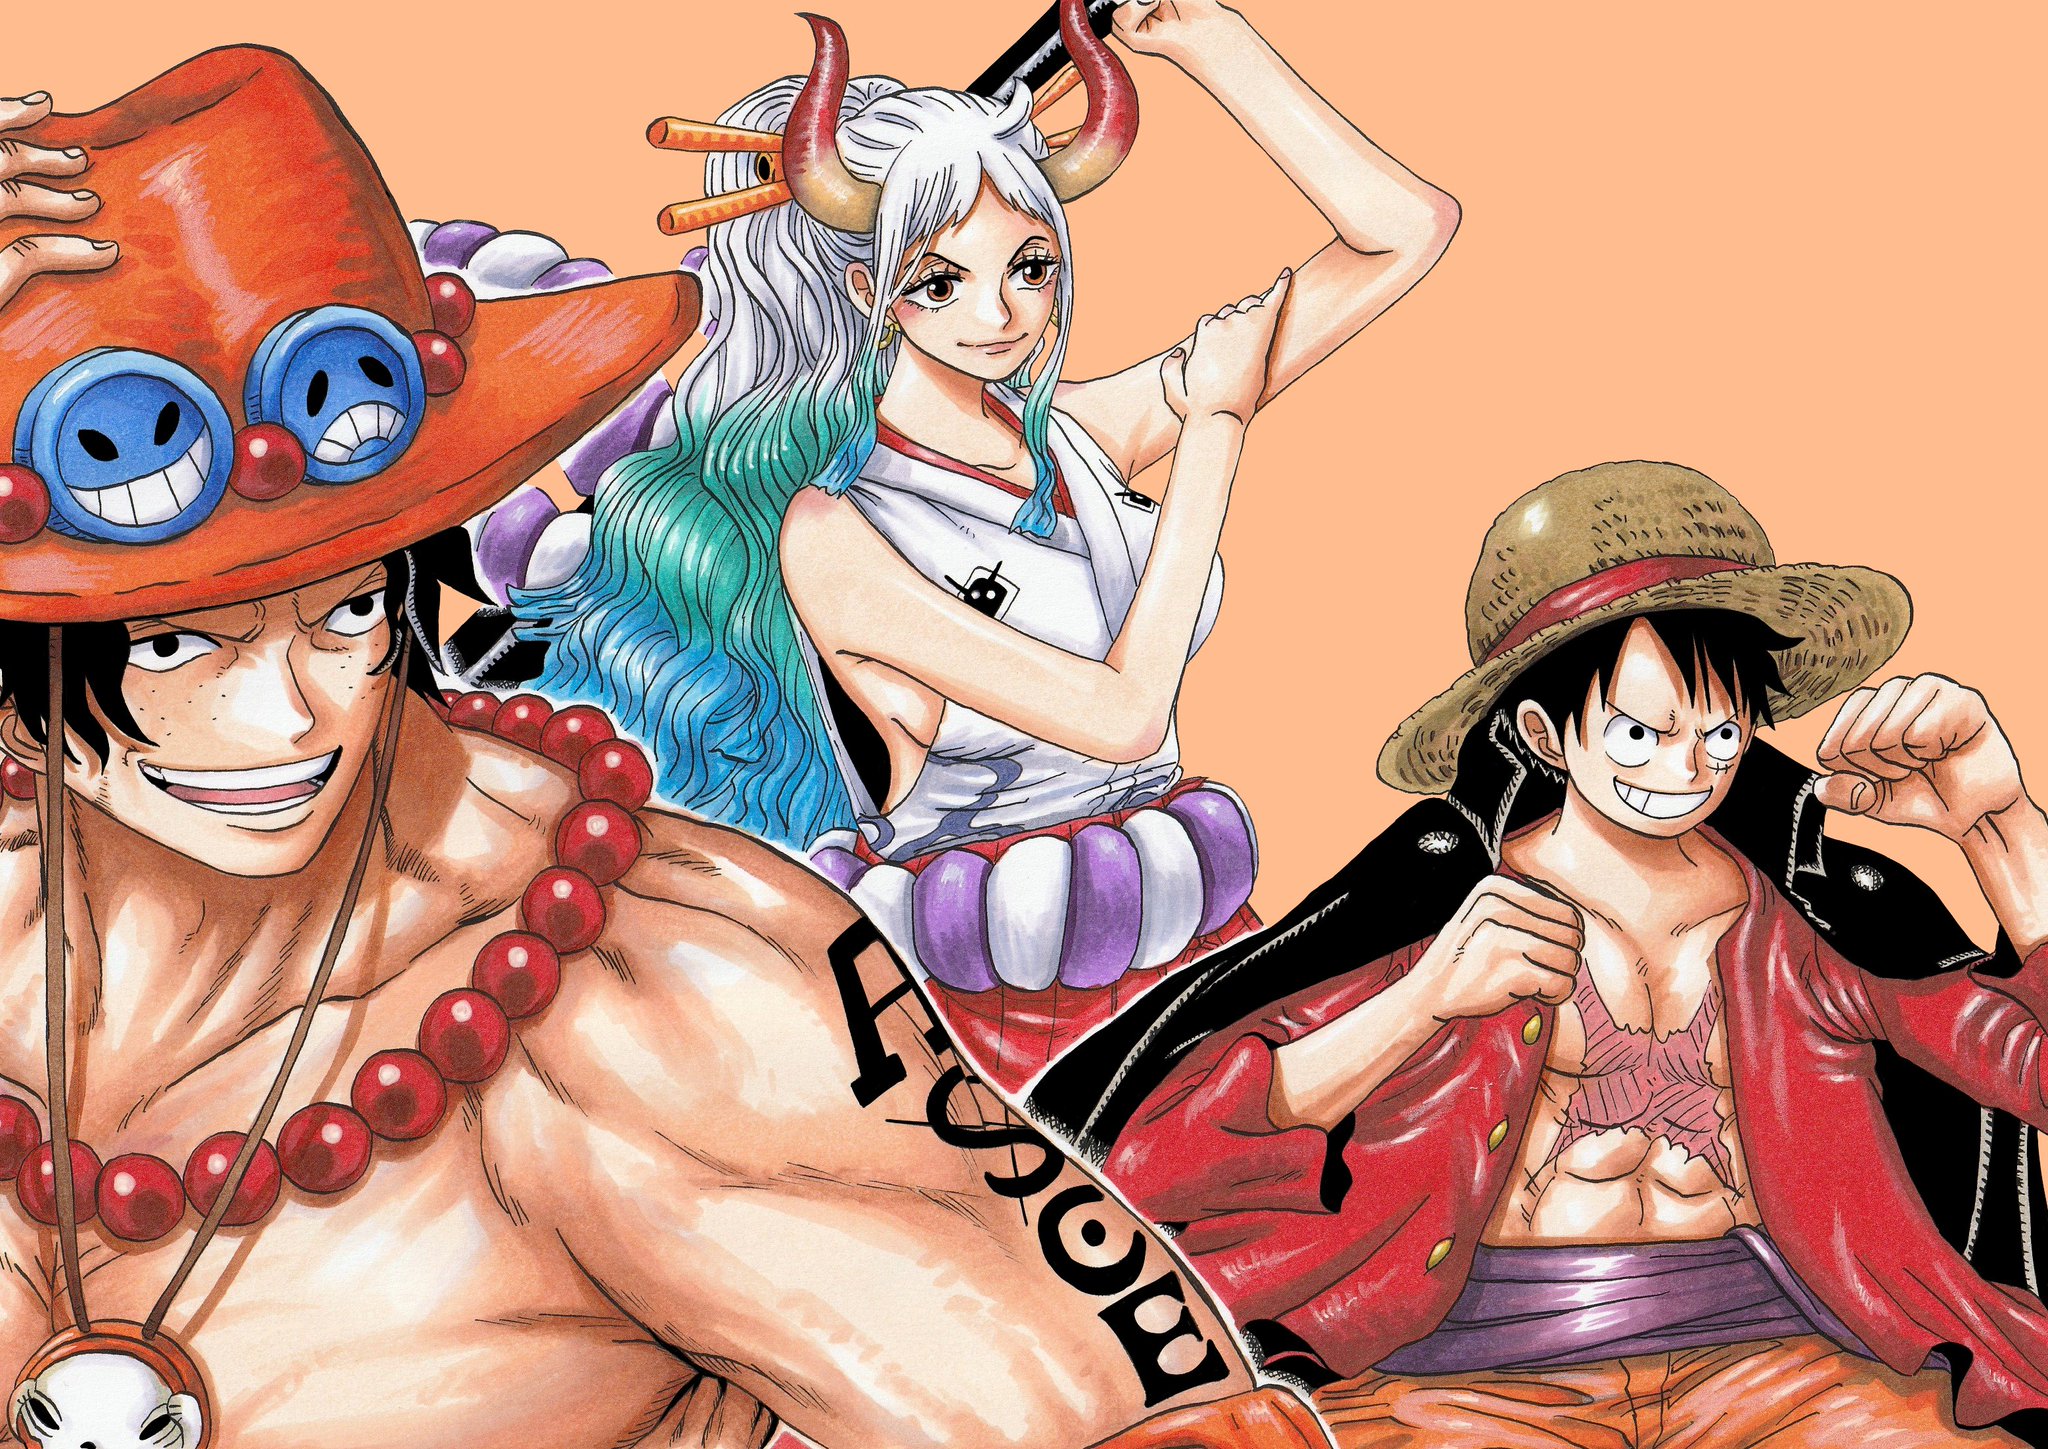 Anime One Piece HD Wallpaper: Hãy trang trí cho máy tính của bạn với những hình nền đầy màu sắc và sinh động của Anime One Piece. Từ một chàng trai trẻ nhạy bén Luffy, cho tới hành trình tìm kiếm kho báu One Piece xa xôi và những cuộc phiêu lưu trên đại dương - Anime One Piece mang đến cho chúng ta những giây phút thư giãn thật tuyệt vời.